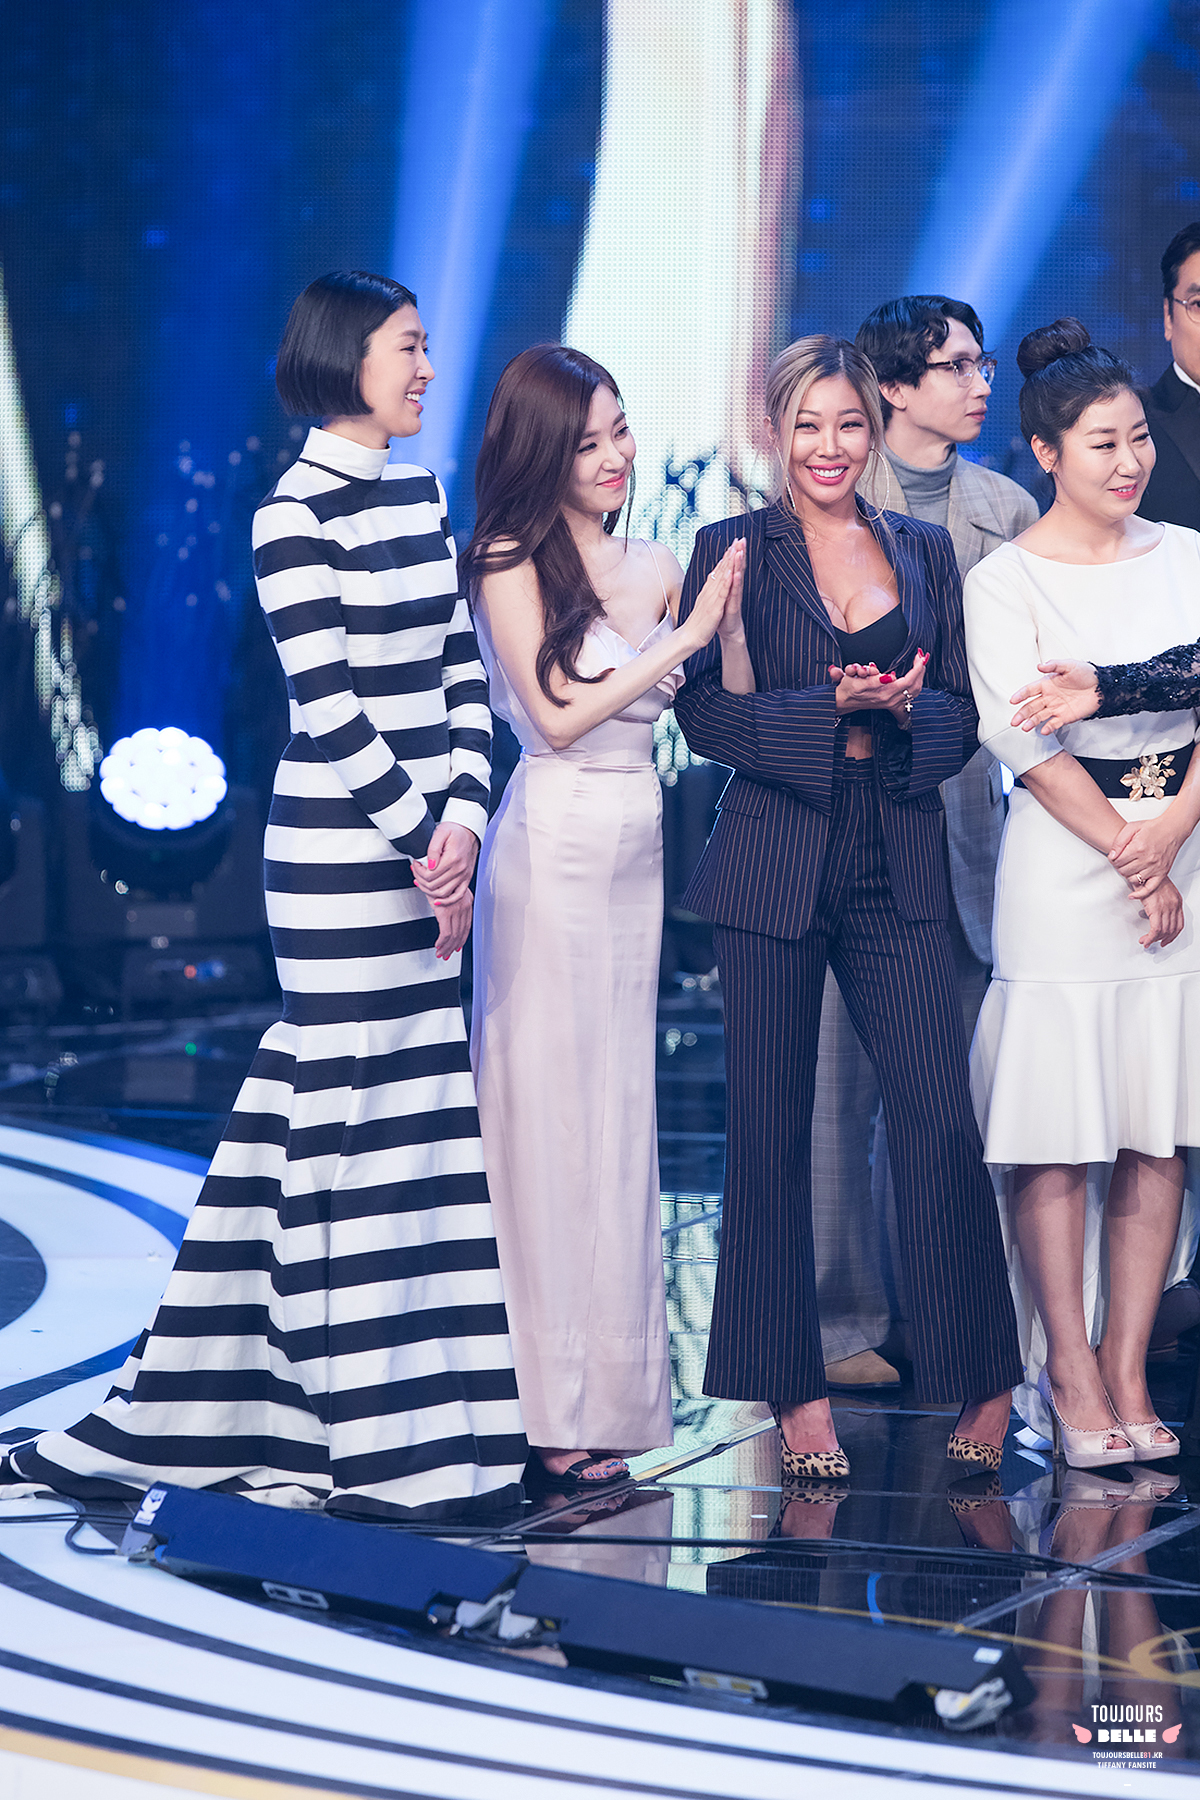 [PIC][24-12-2016]Tiffany tham dự và biểu diễn tại “2016 KBS Entertainment Awards” vào hôm nay - Page 2 31053903313_9edc11424e_o